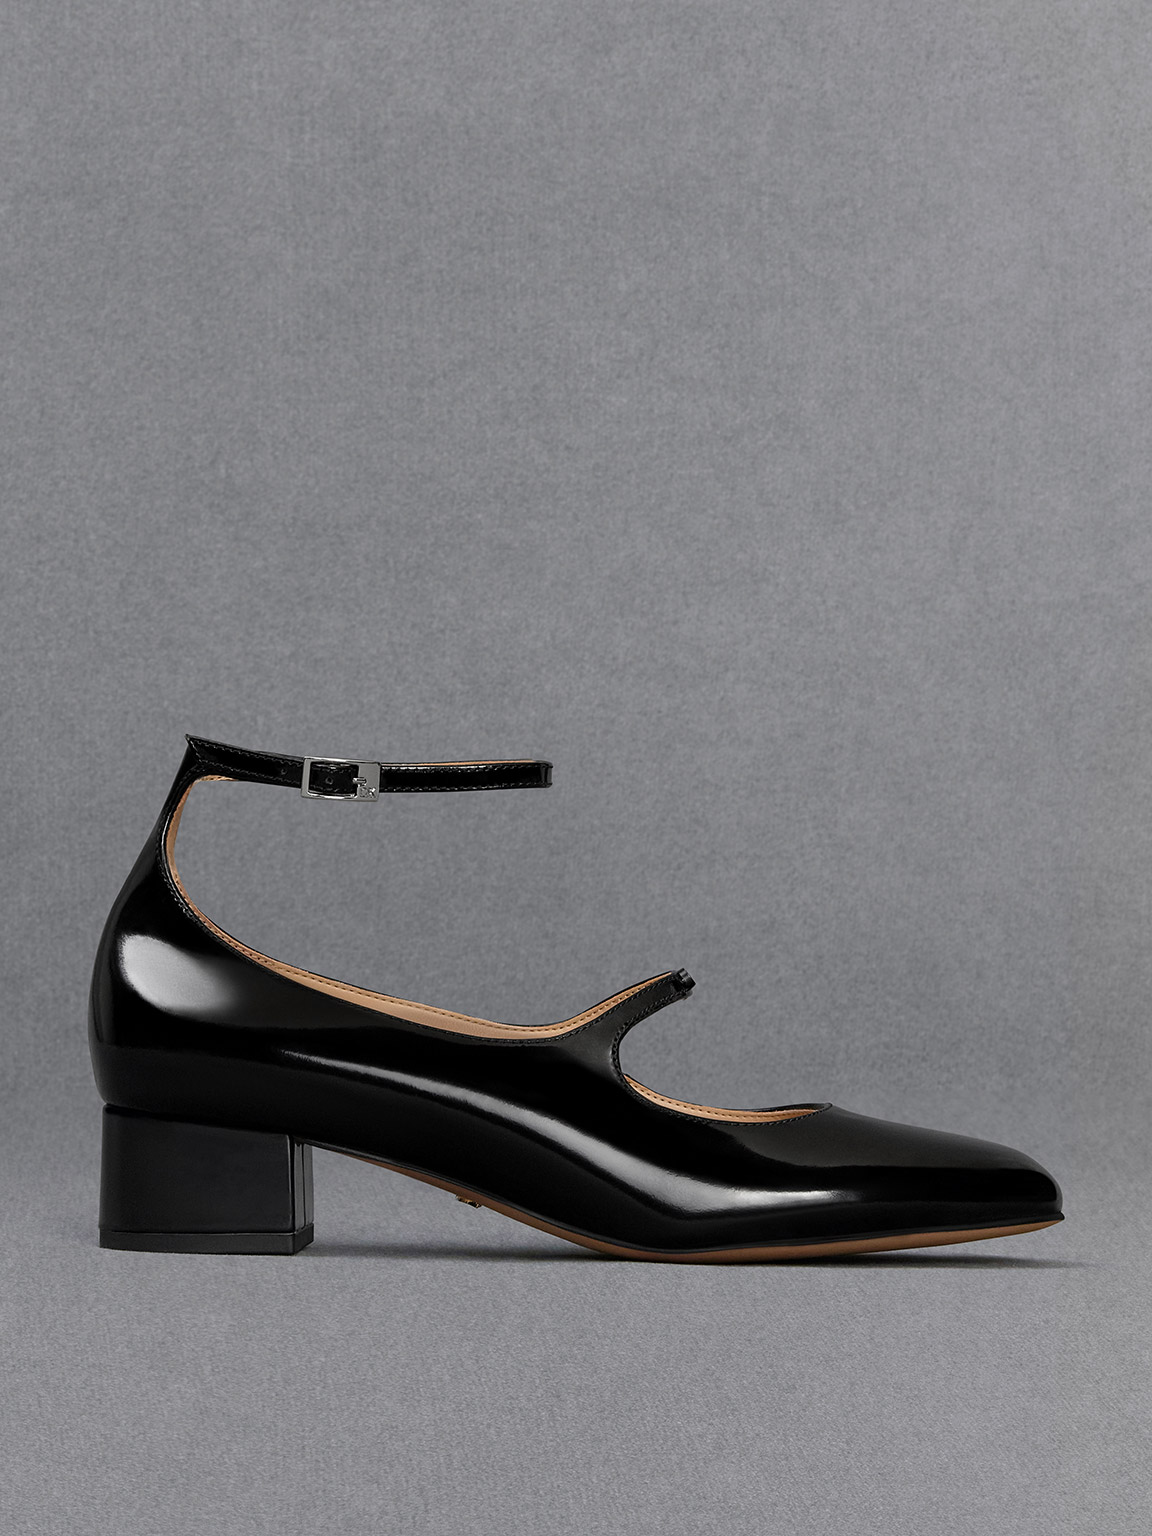 KINA black leather Mary Janes pumps | Carel Paris Shoes